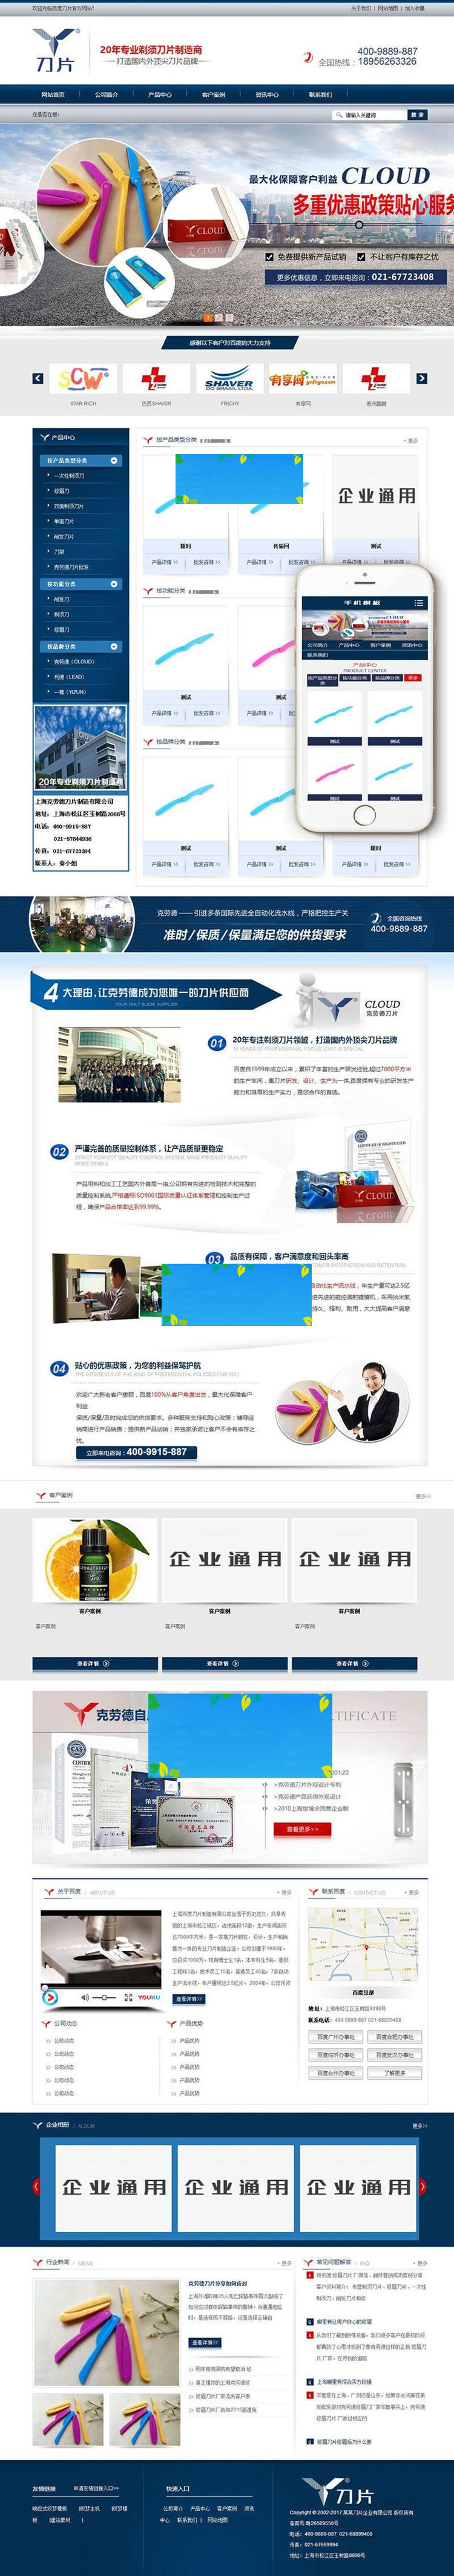 织梦dedecms蓝色营销型剃须刀片公司网站模板(带手机移动端)